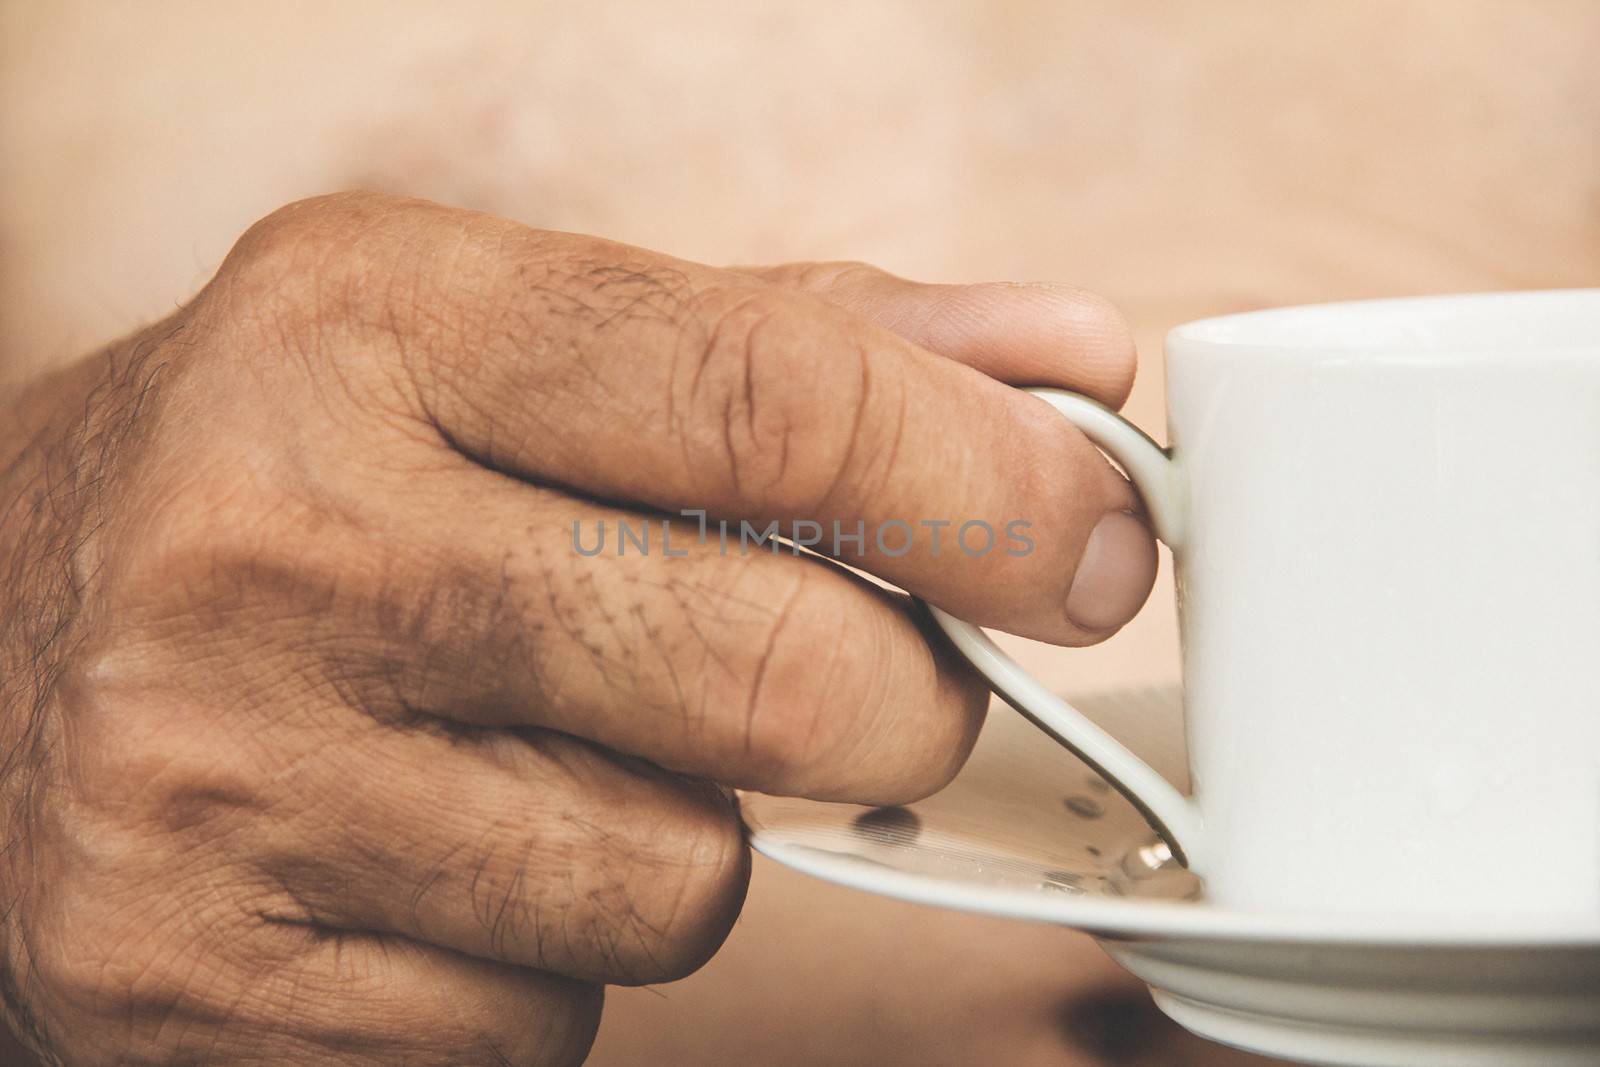 a hand ilfts a cup of tea